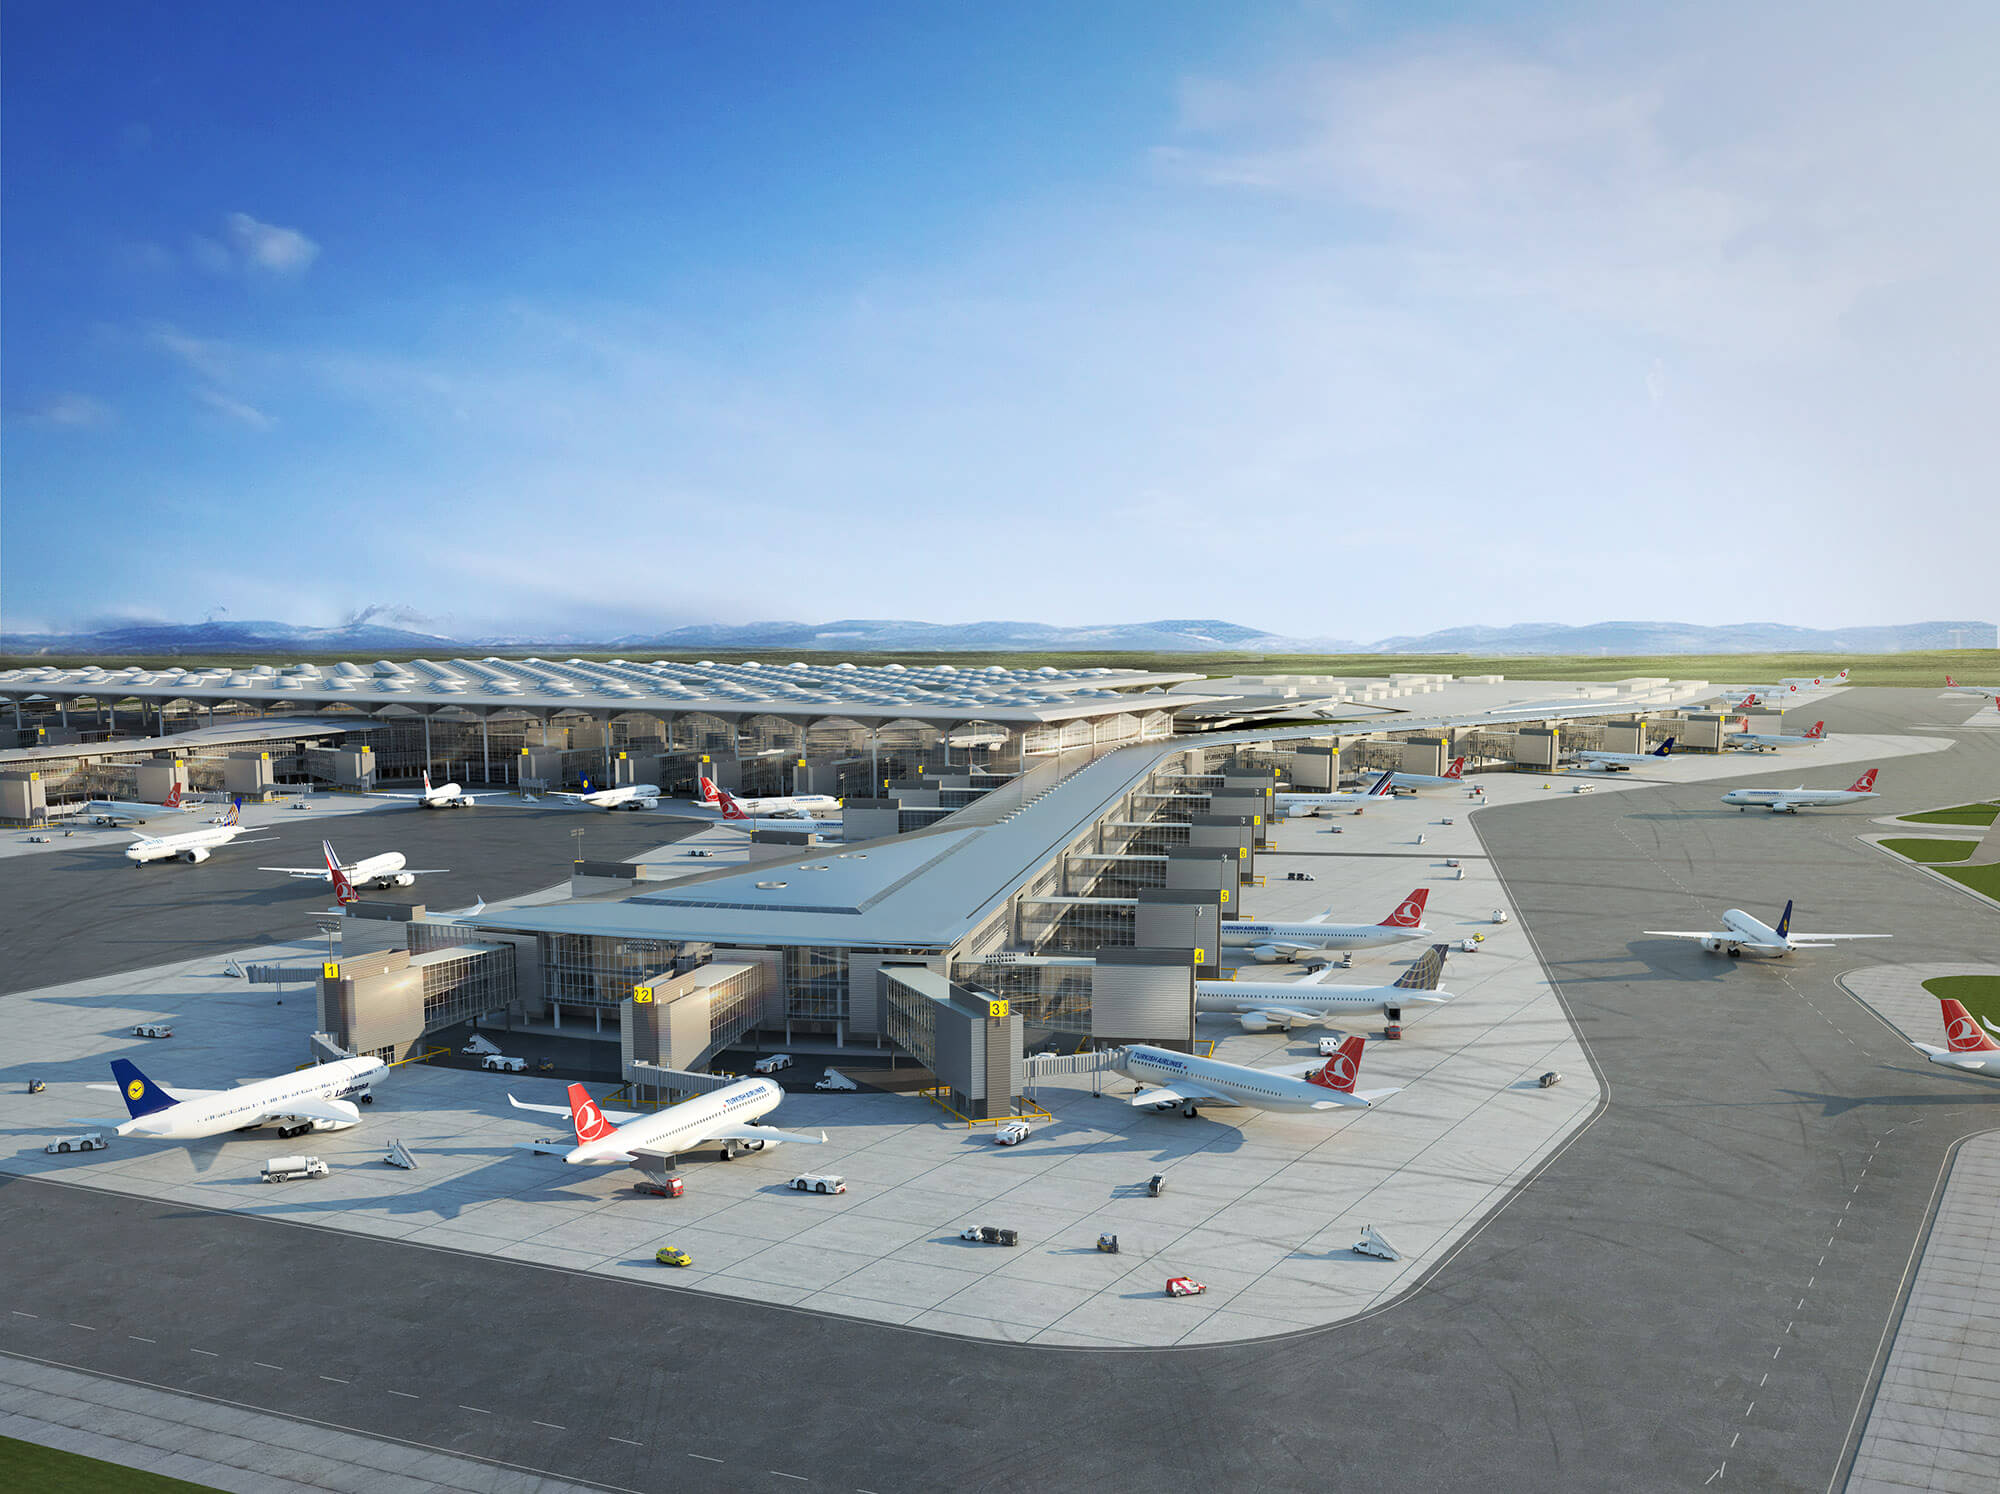 Neuer Flughafen Istanbul image1